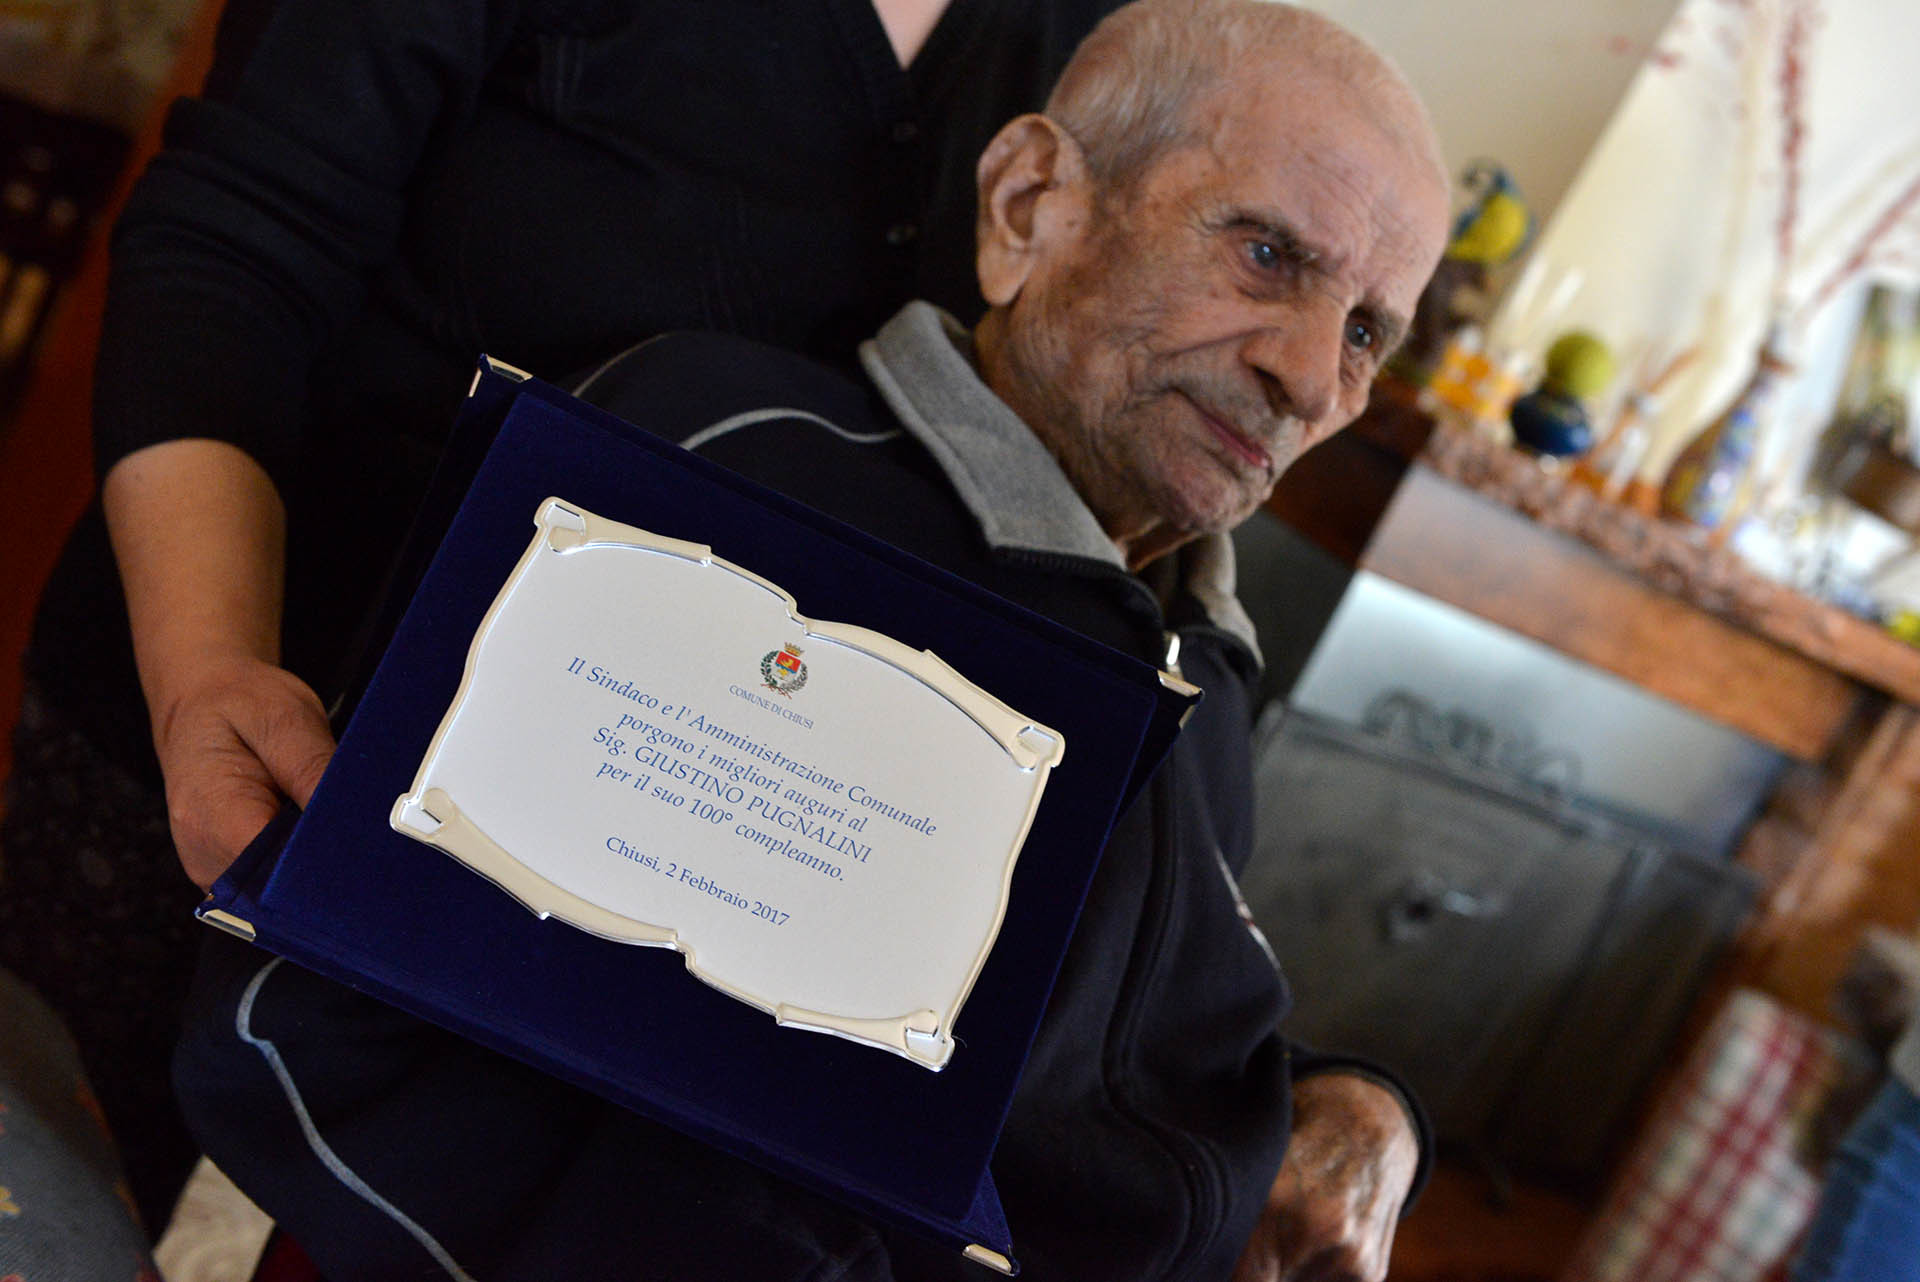 Chiusi: Auguri per i 100 anni di nonna Santina e nonno Giustino